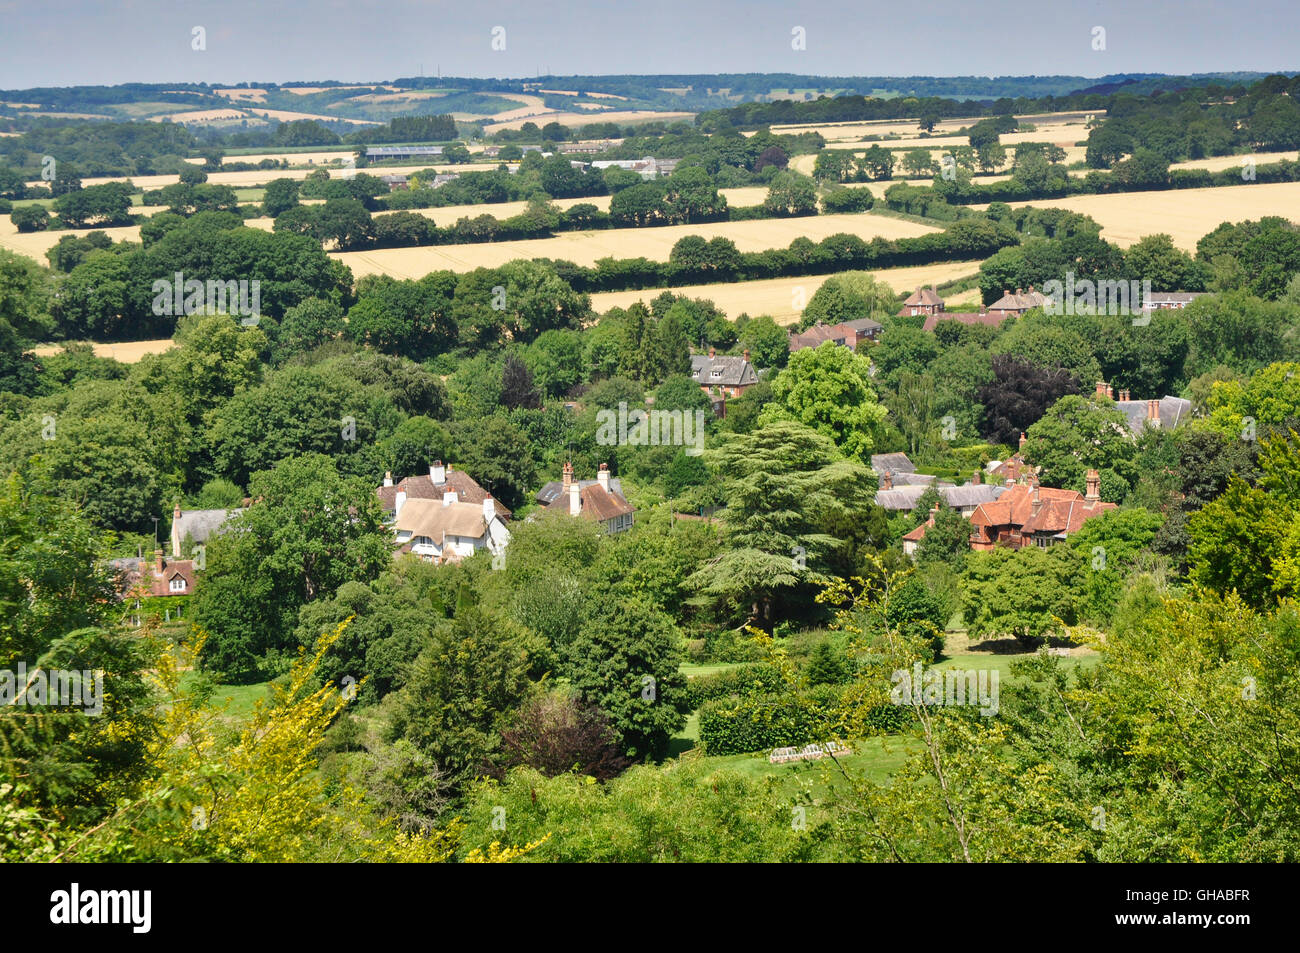 Hampshire vue sur village Selborne de Selborne - gîte commun toits -Arbres - champs - soleil d'été - Anglais pays Banque D'Images